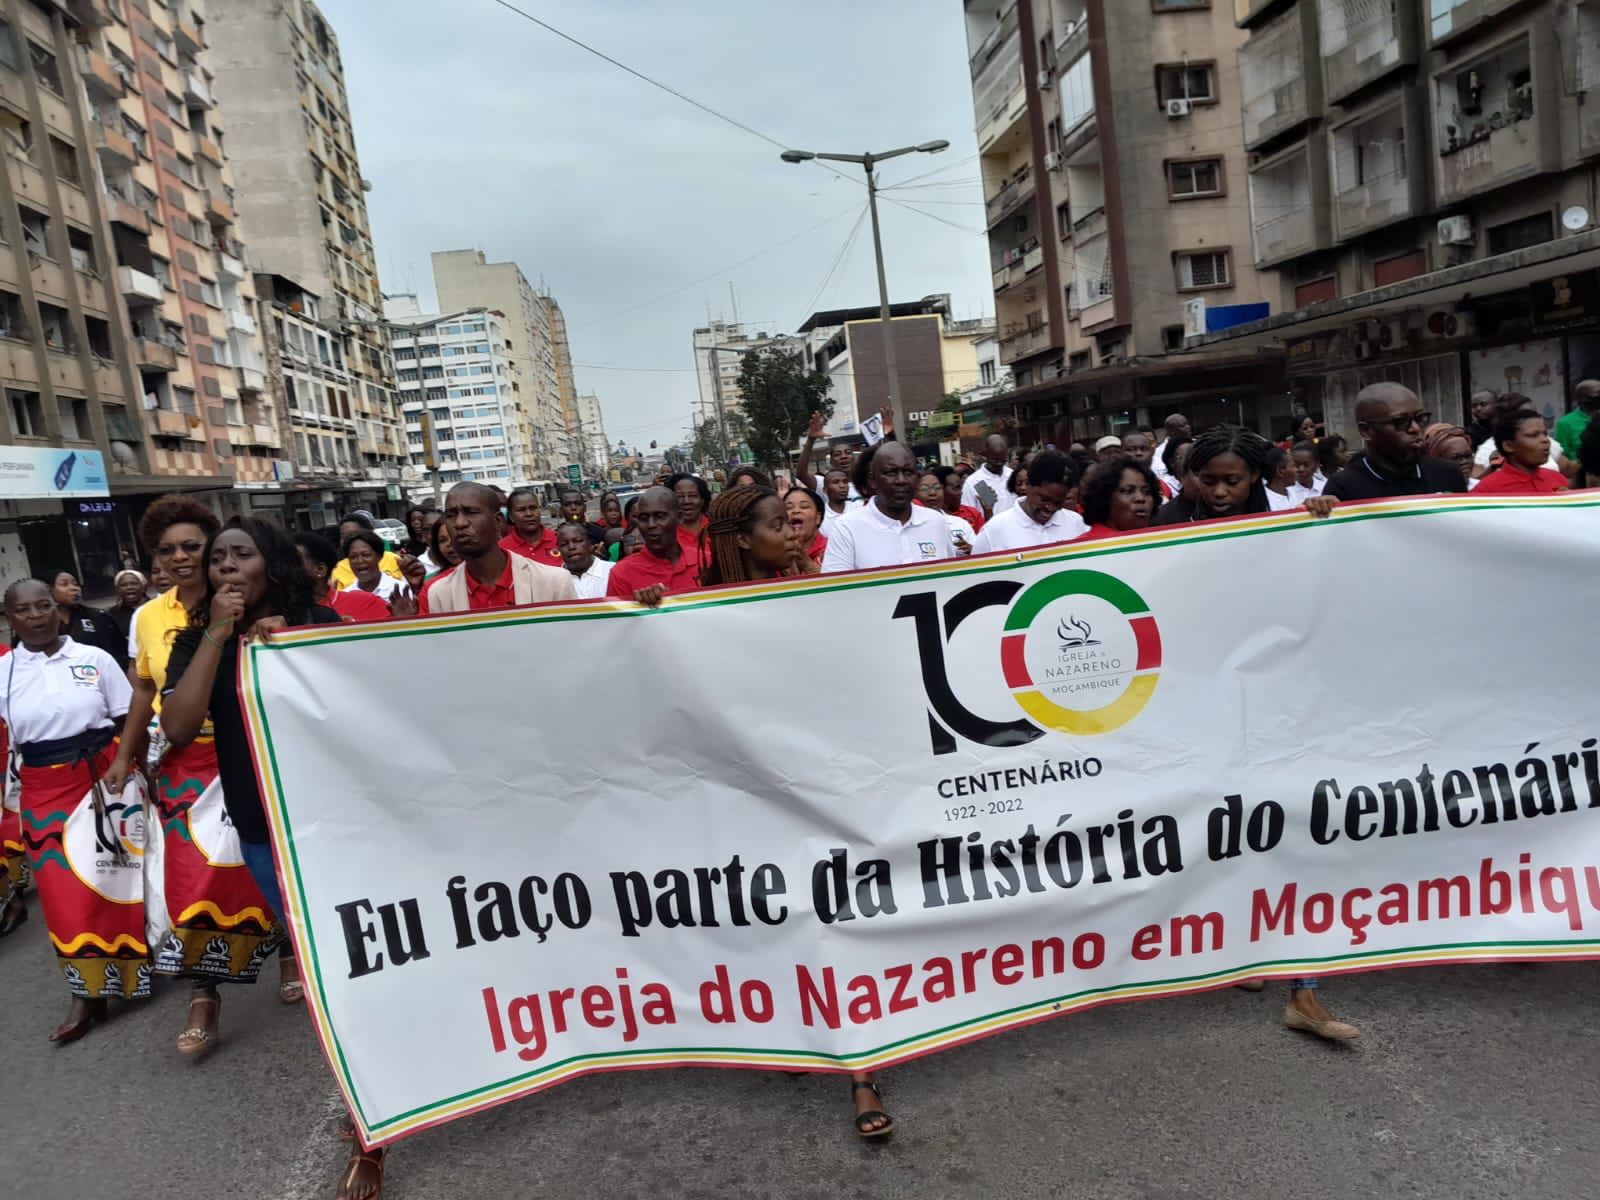 Mozambique Centennial Celebrations Begin